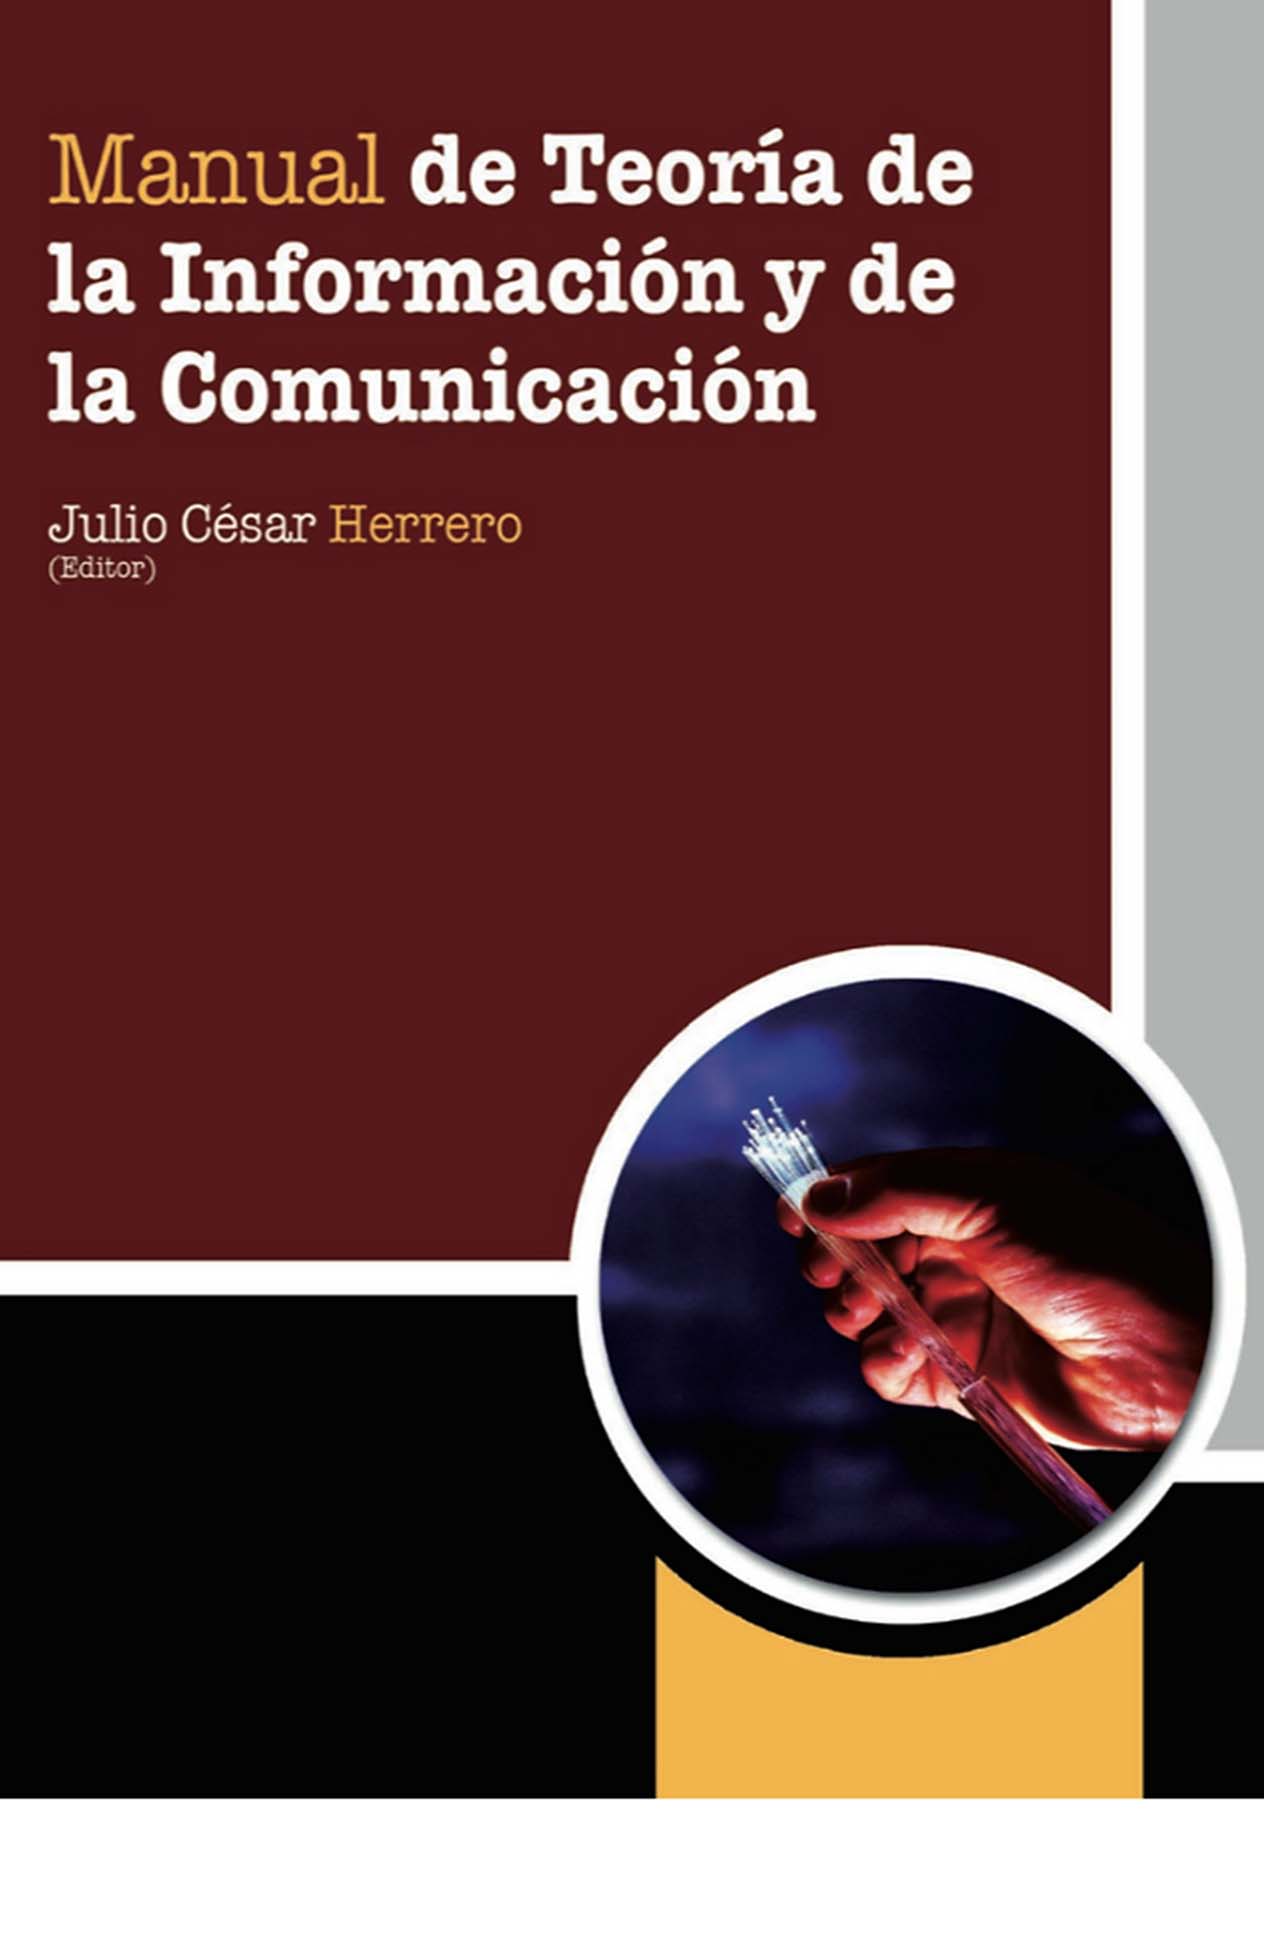 Portada del libro "Manual Teoría de la información" de Julio César Herrero